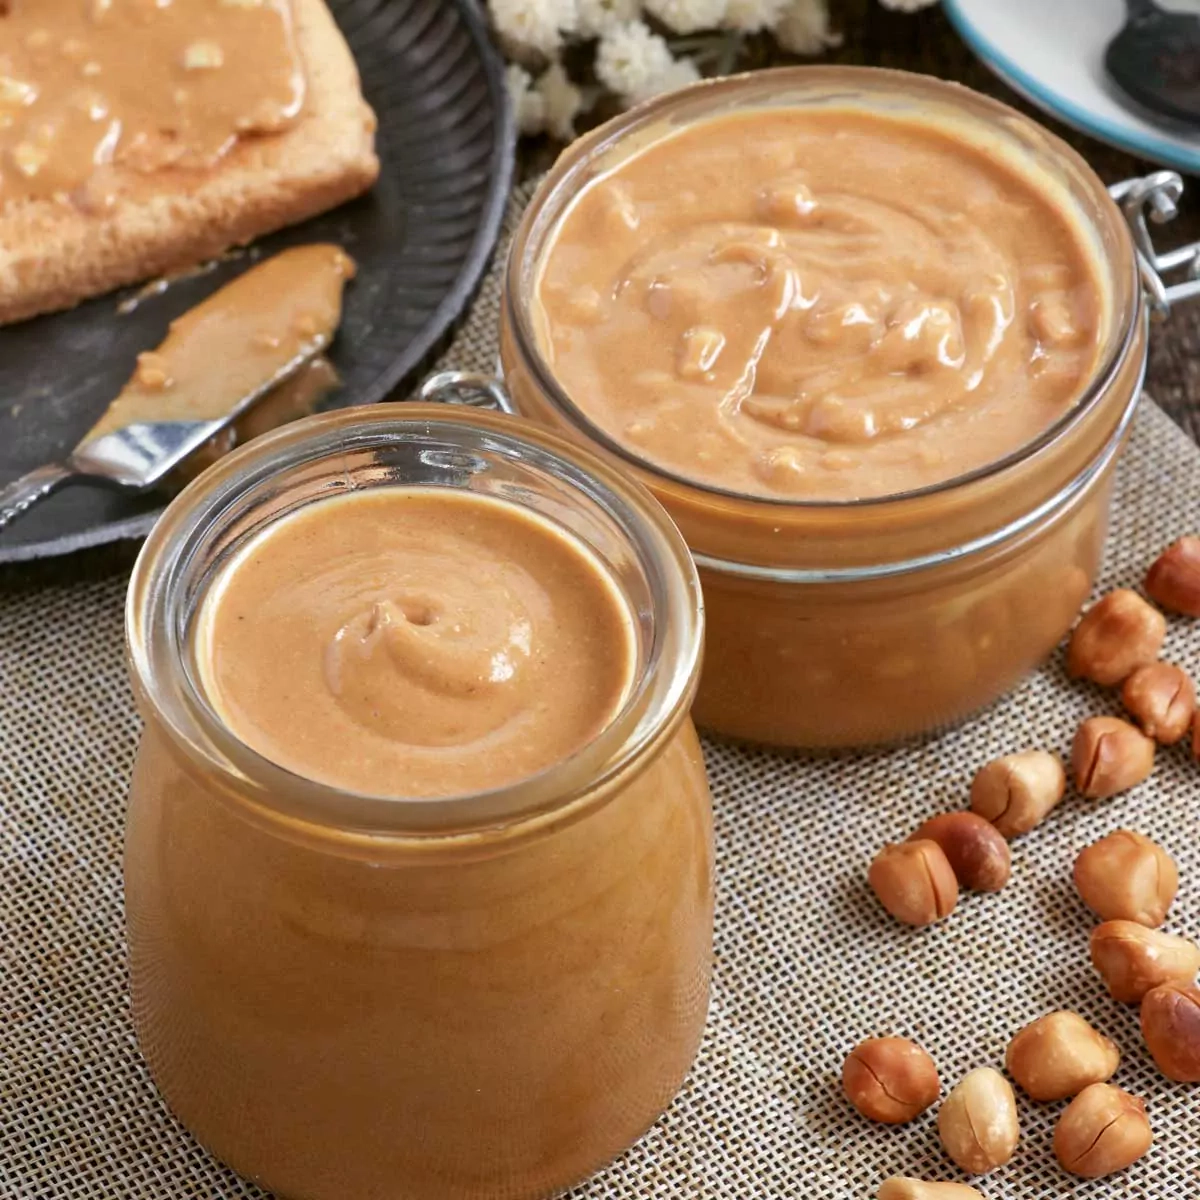 Natural homemade peanut butter